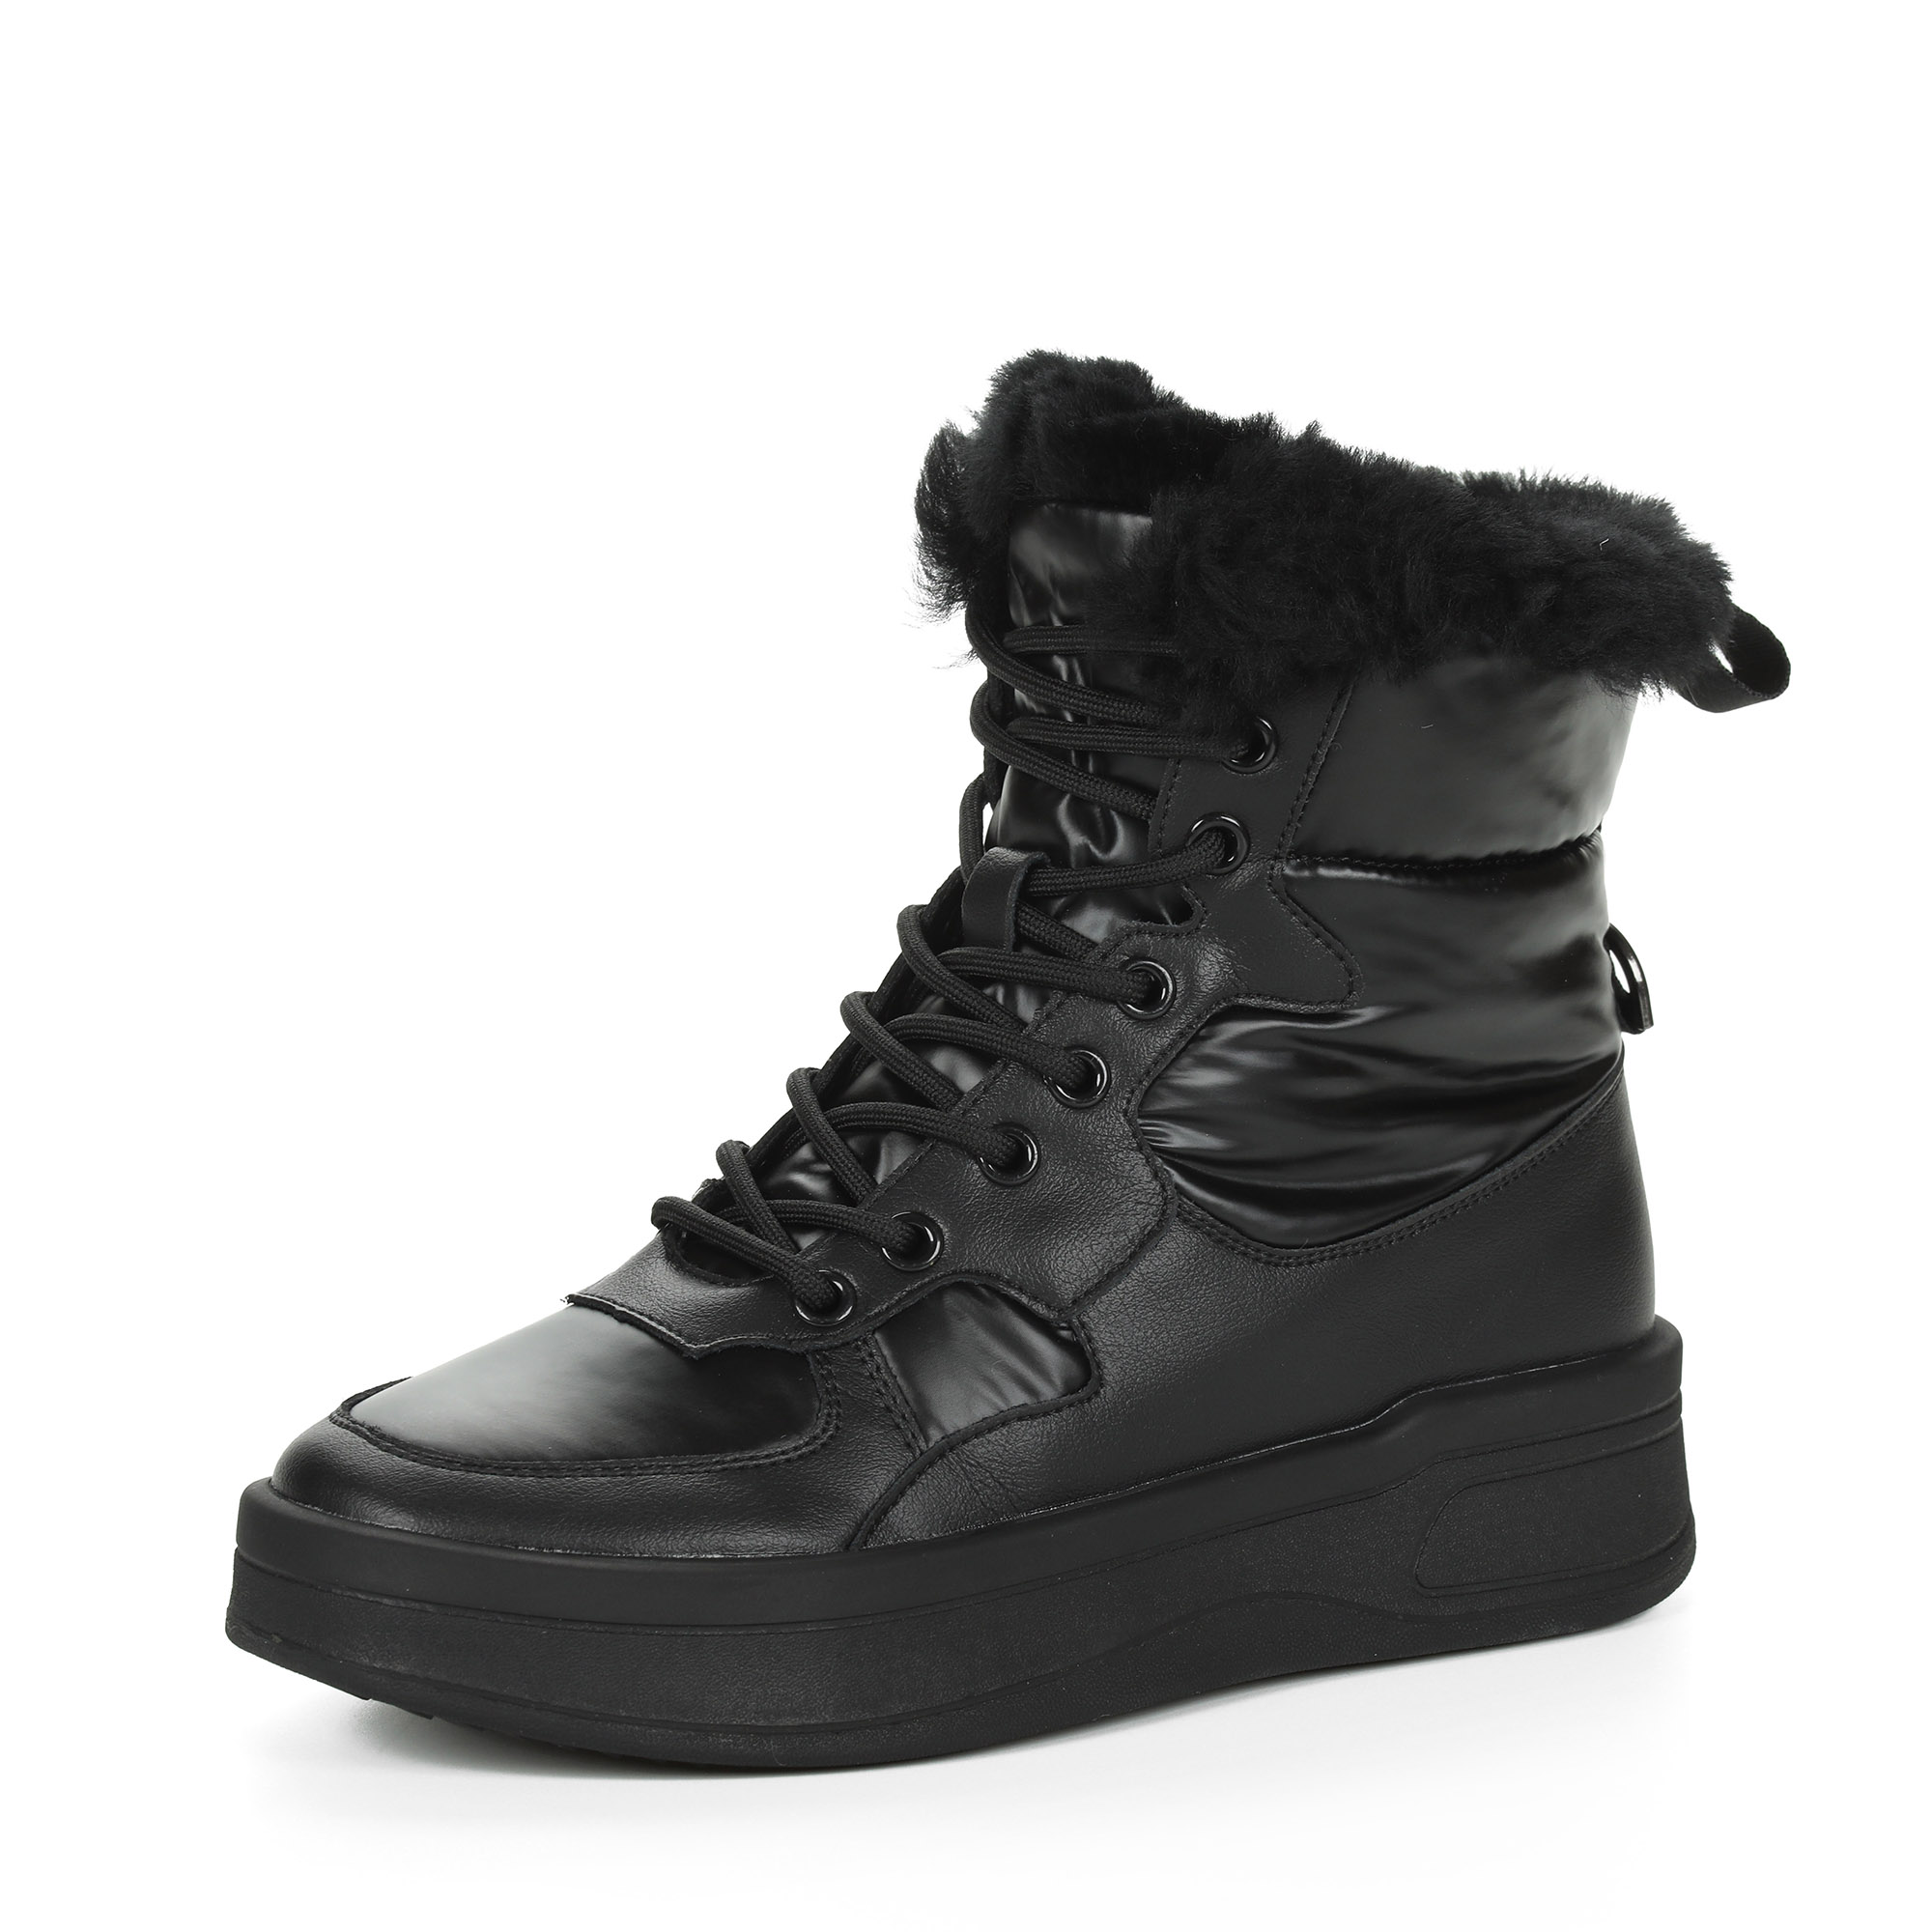 Черные высокие кроссовки из комбинированных материалов смеховой опушкой на подкладке из натуральной шерсти на утолщенной платформе Respect, размер 40, цвет черный - фото 3